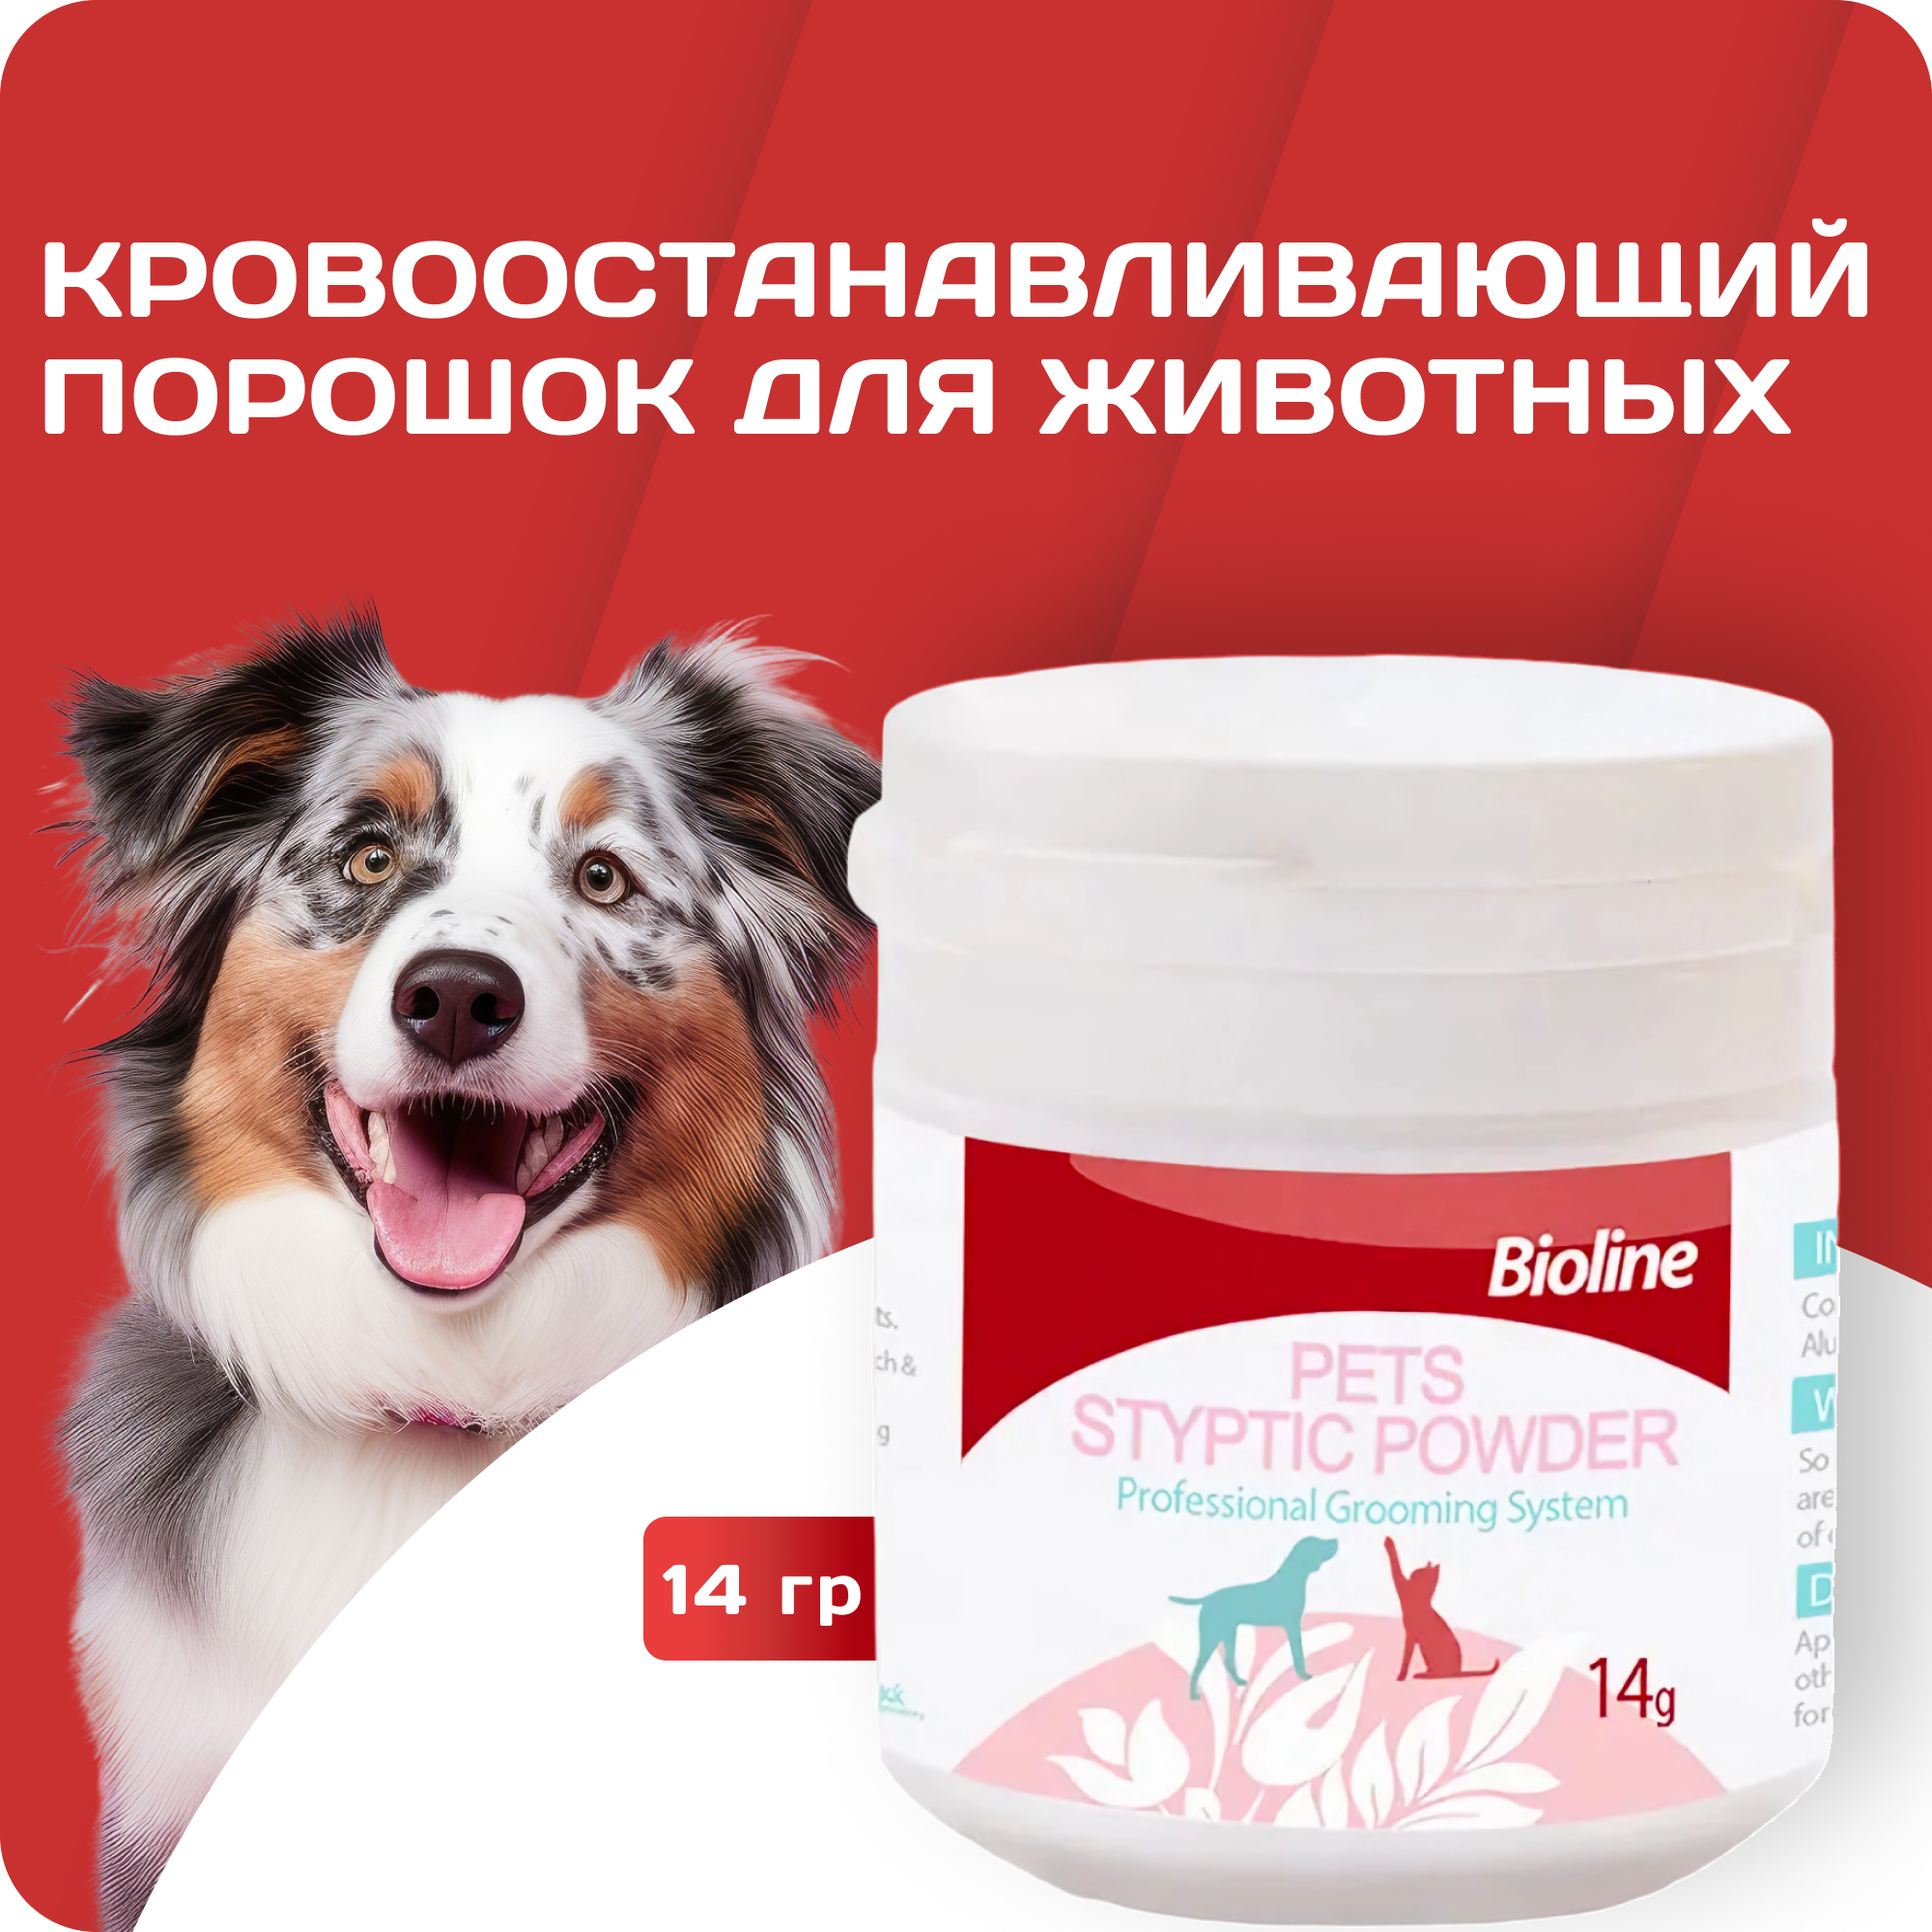 Кровоостанавливающий порошок для собак и кошек Bioline применяется для остановки крови при излишней обрезке когтей, 14 гр